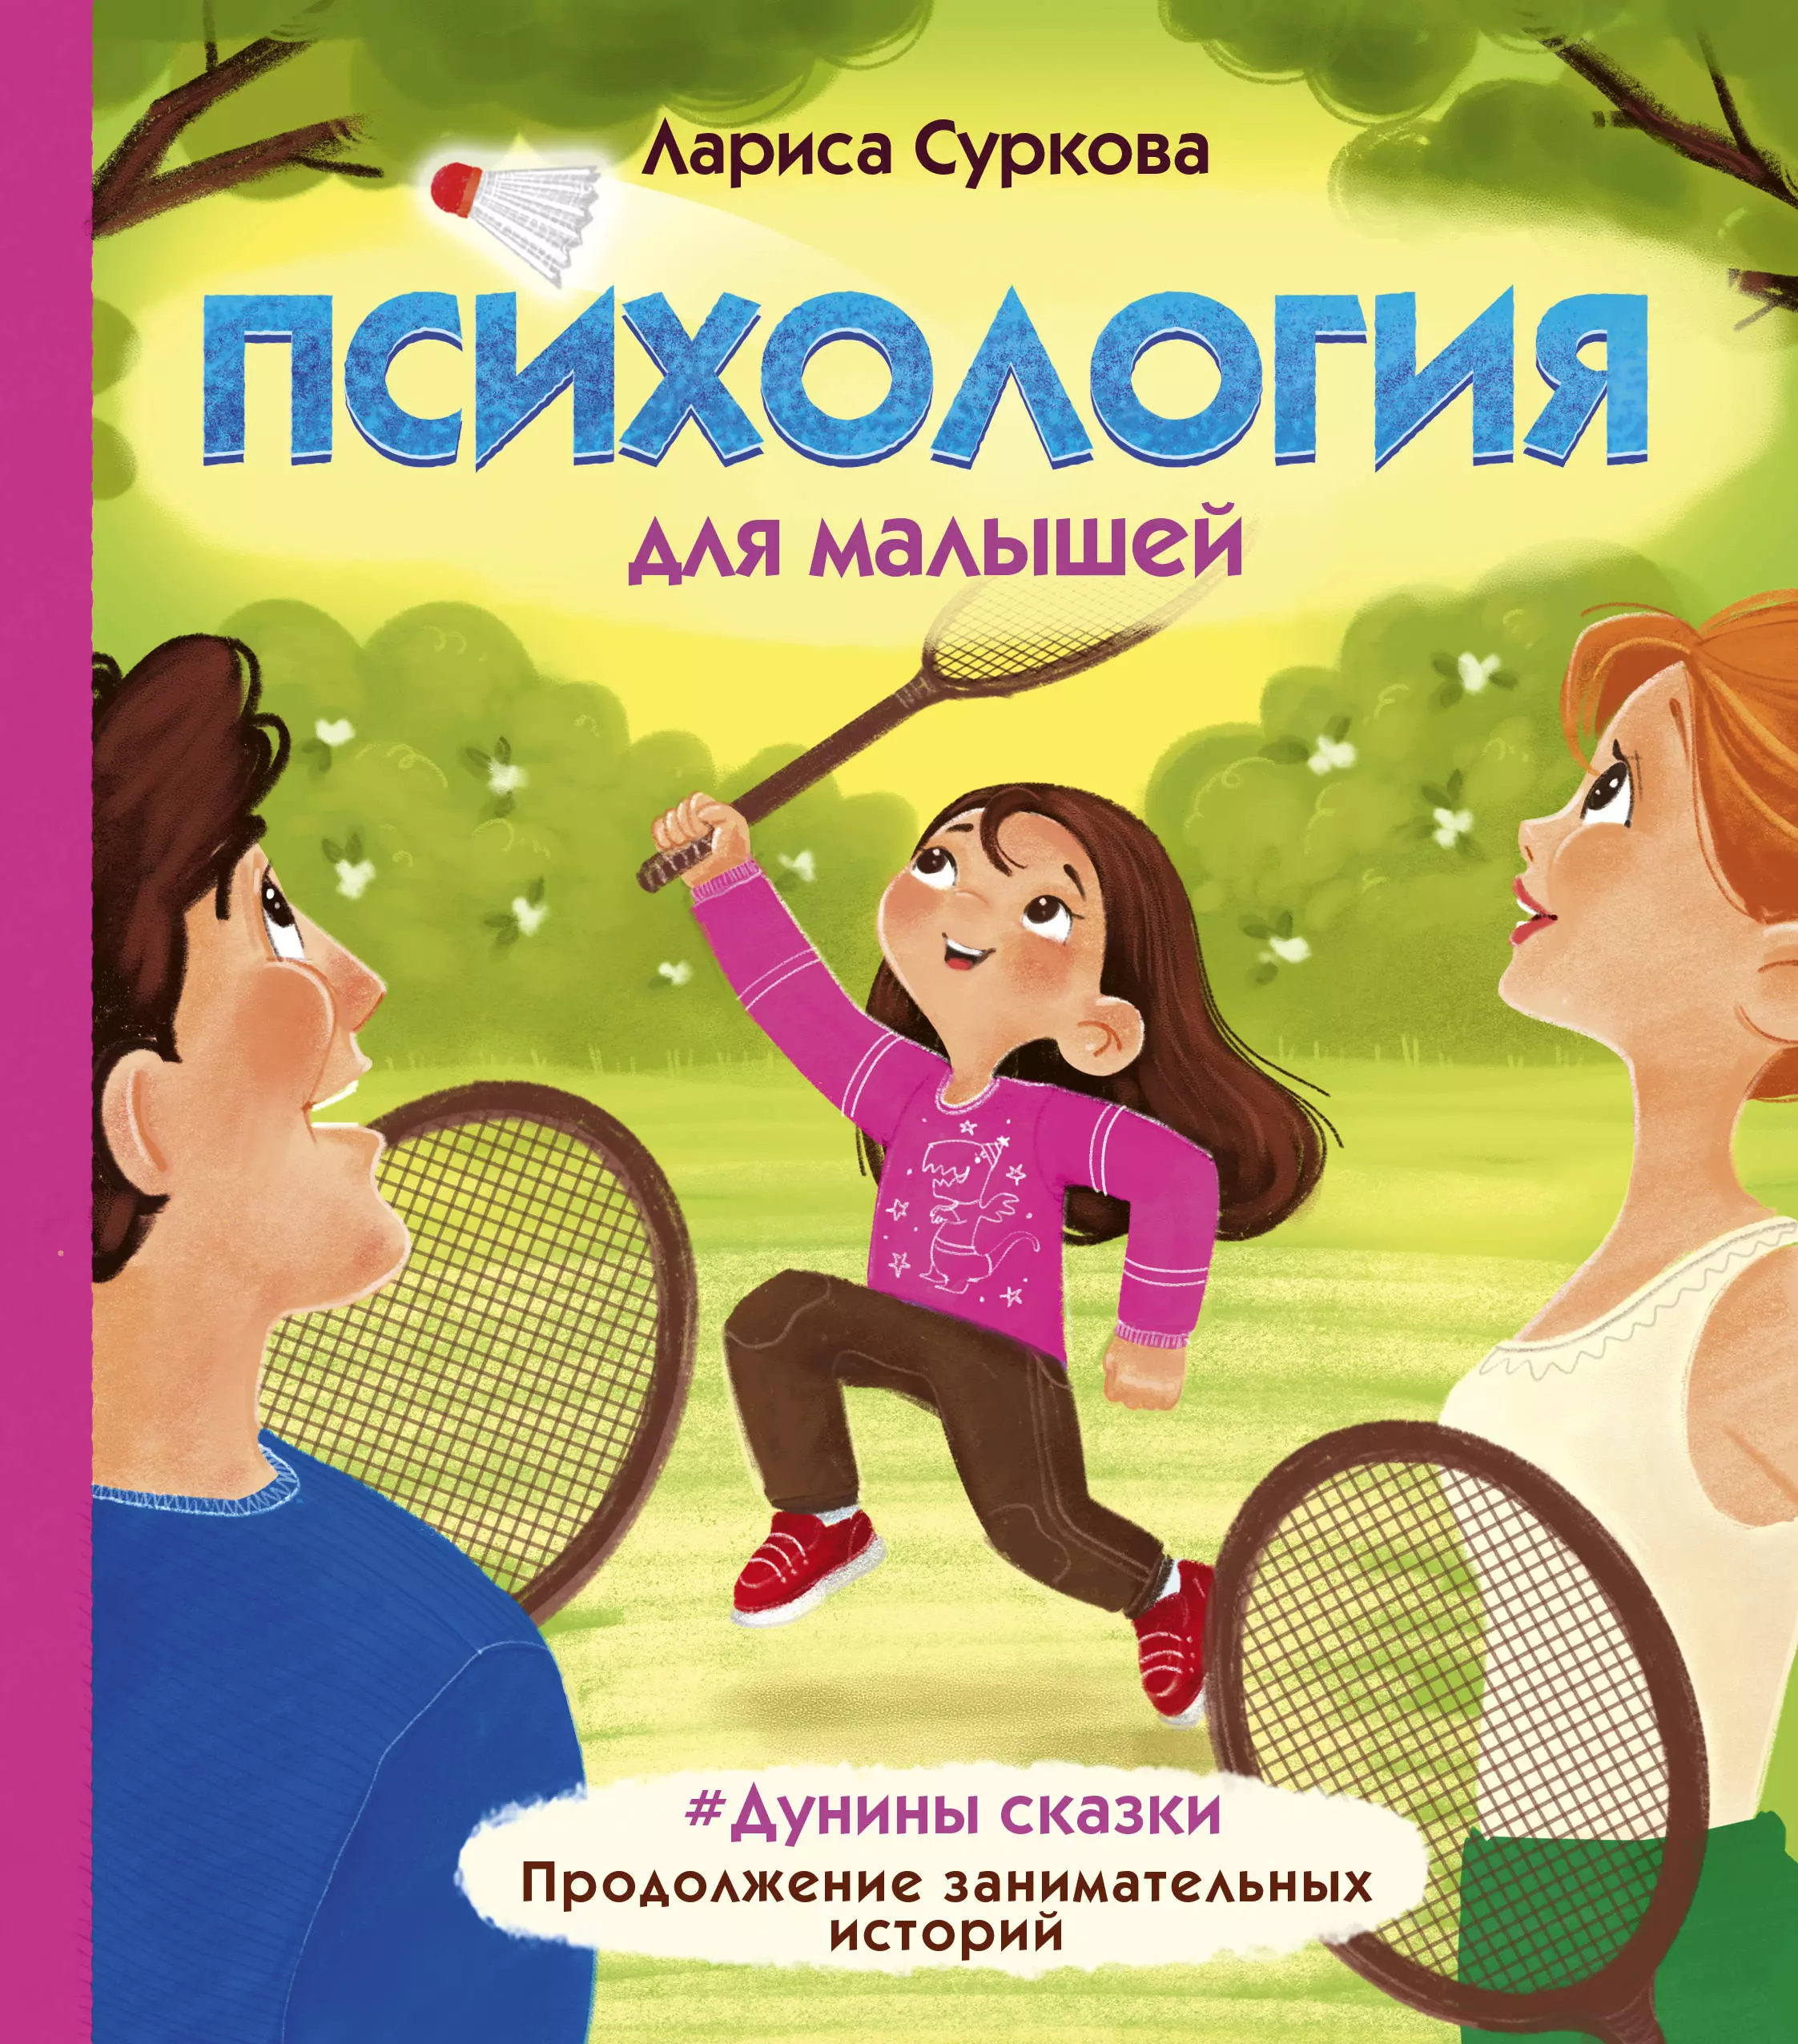 Суркова Лариса Михайловна - Психология для малышей: #Дунины сказки. Продолжение занимательных историй